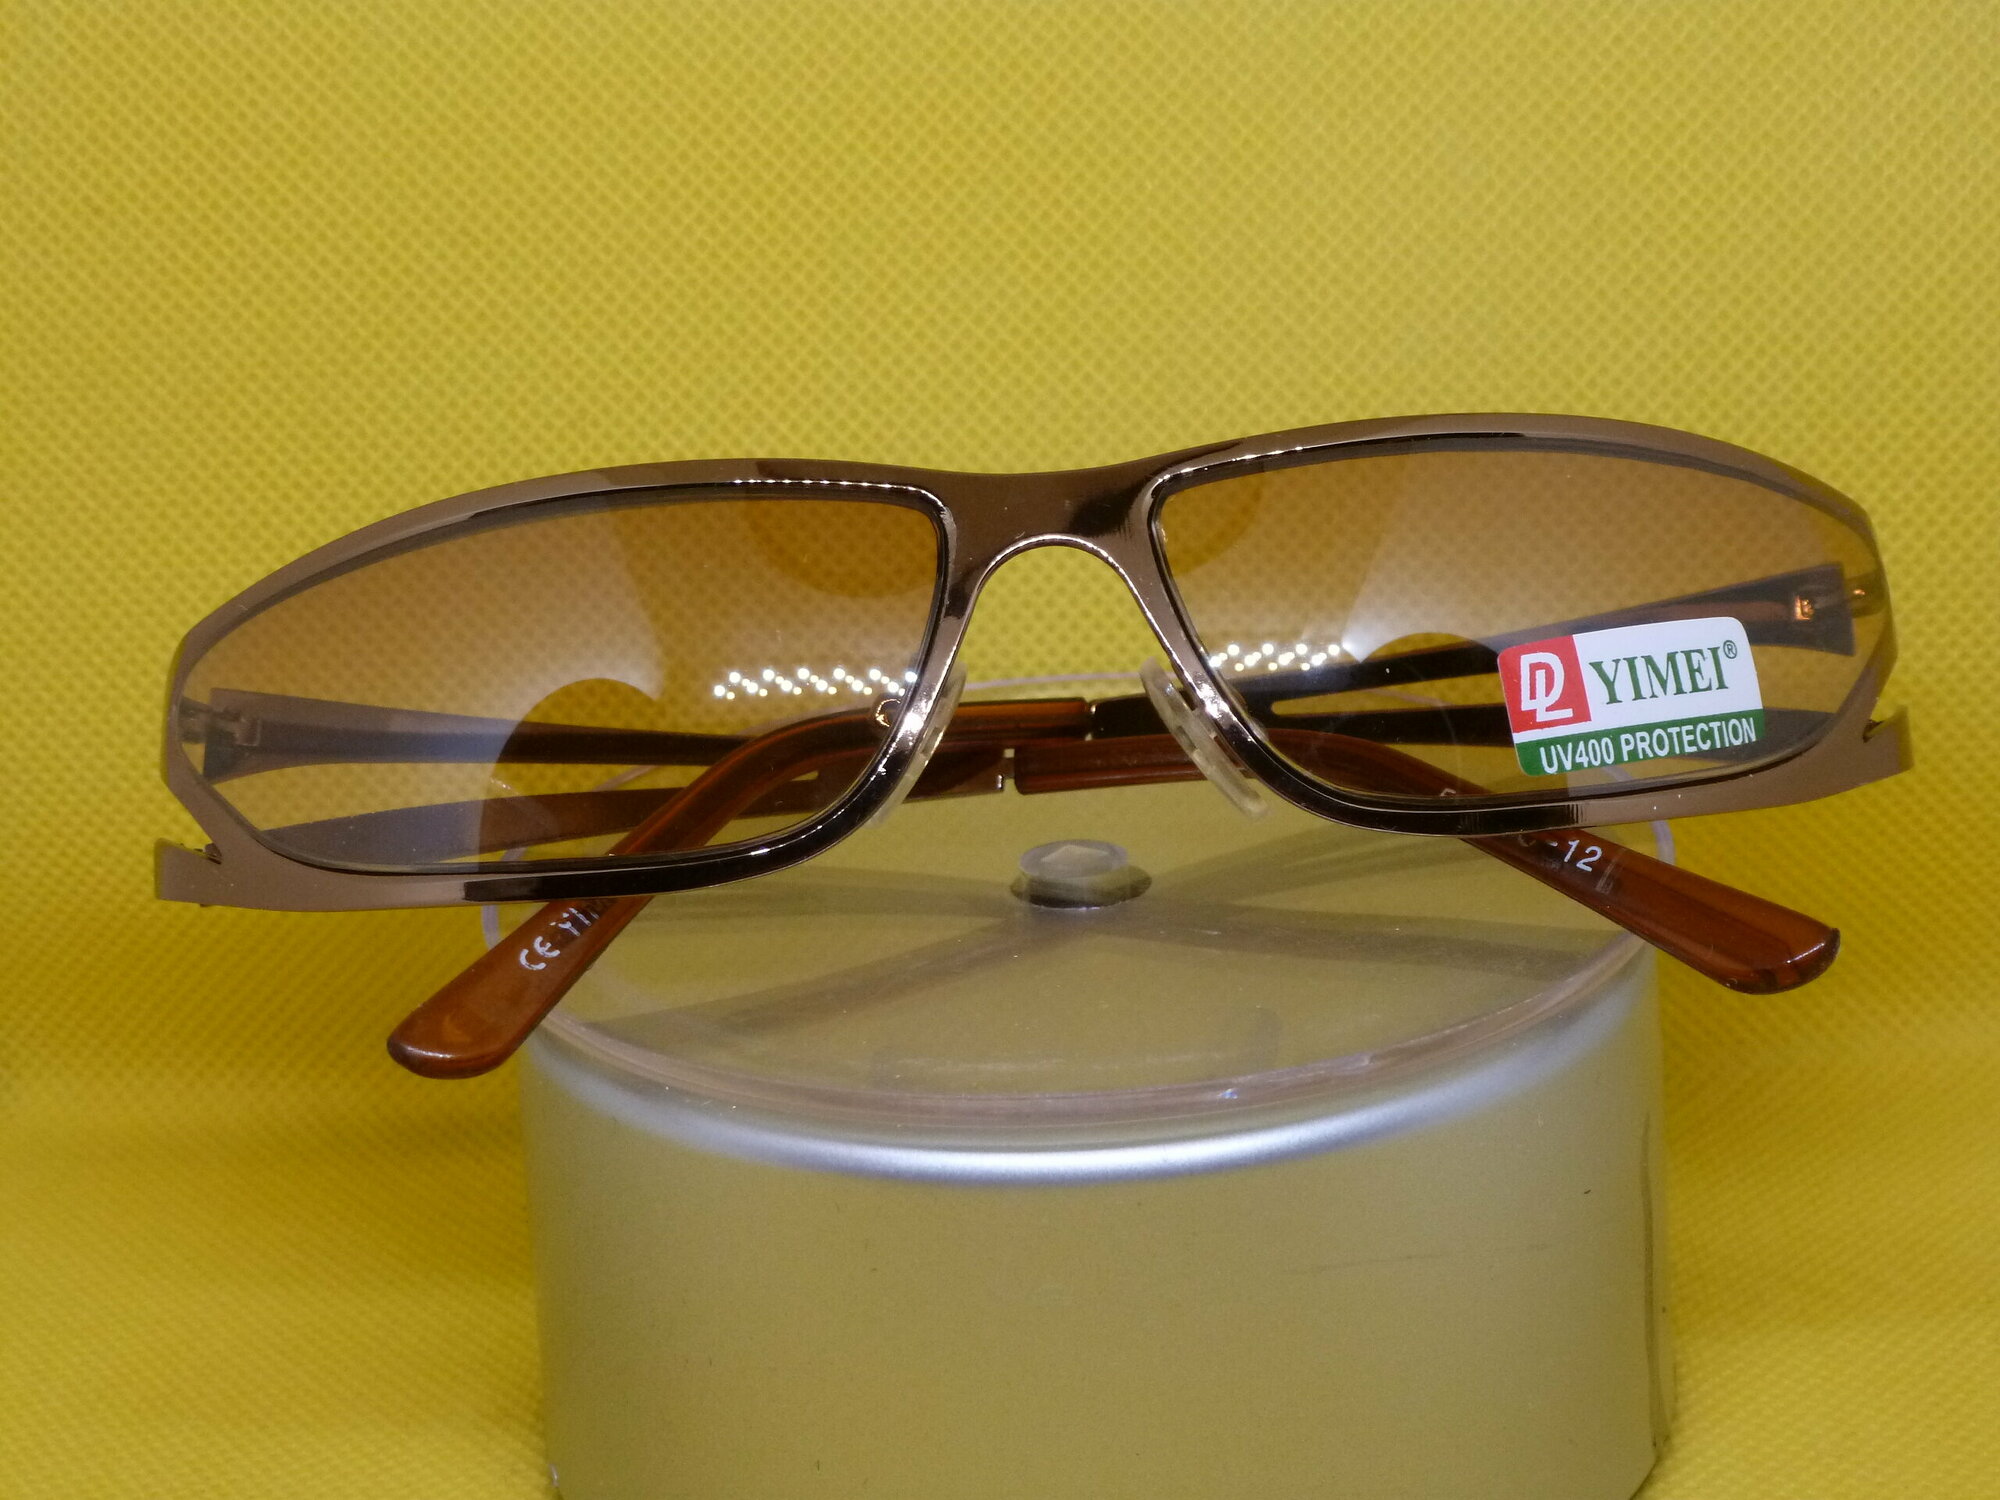 Солнцезащитные очки YIMEI